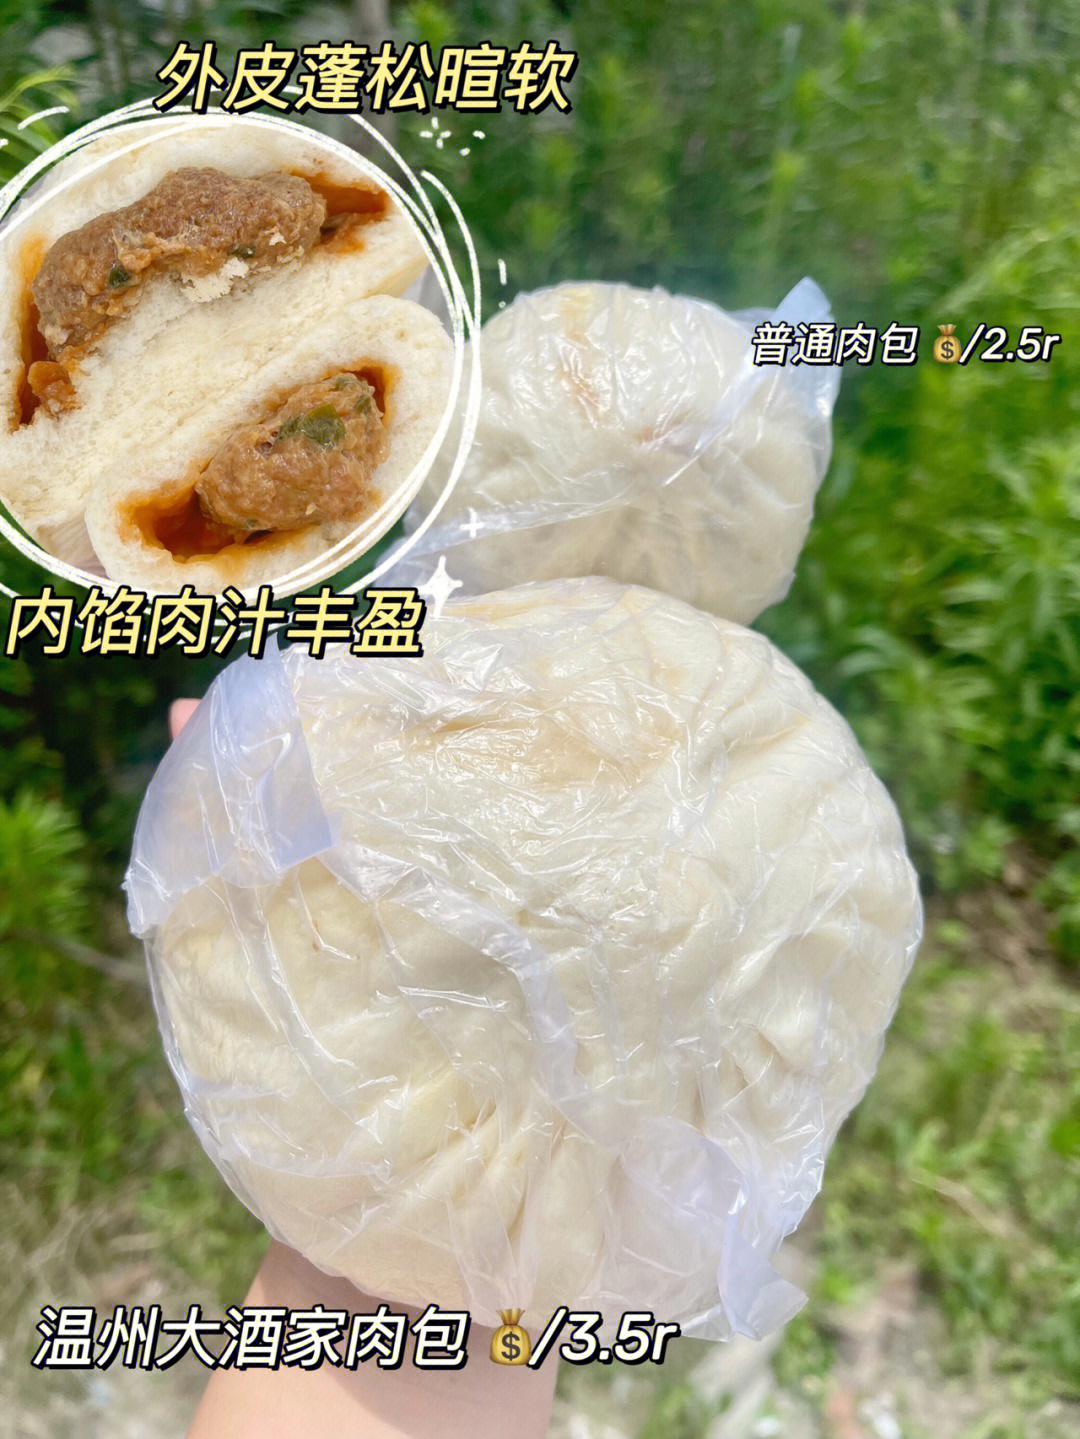 温州蝉街大酒家肉包图片